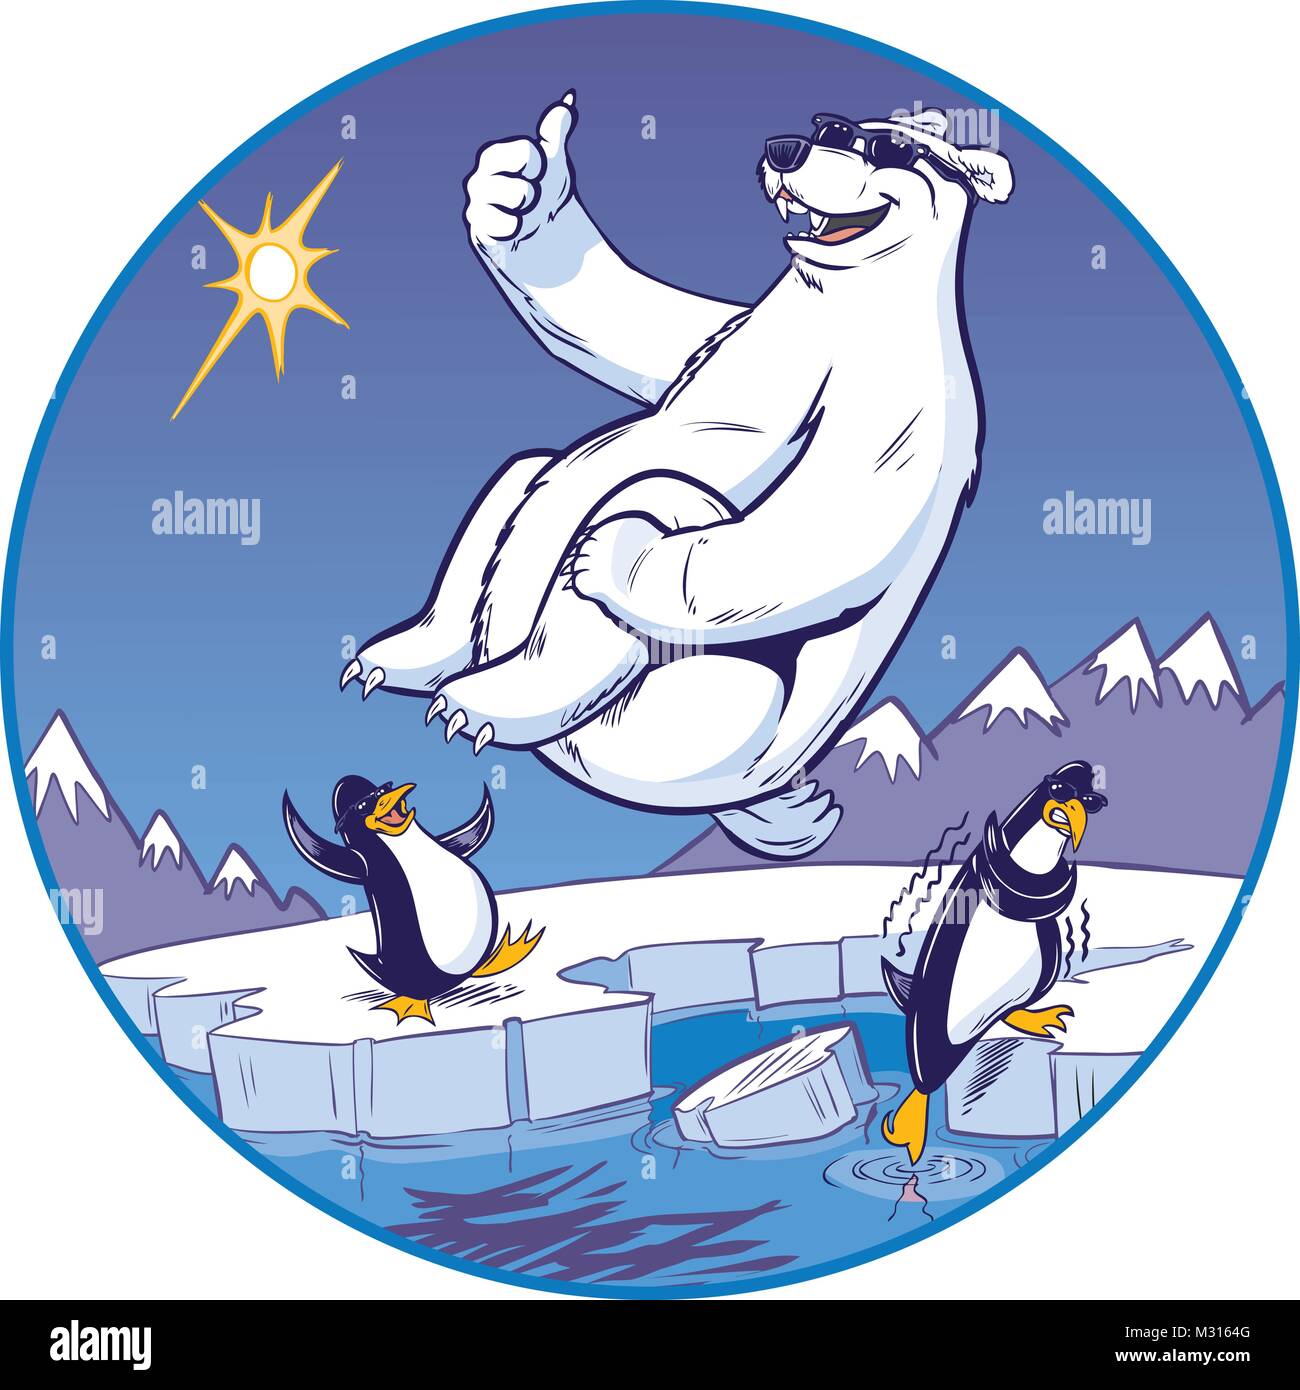 Vector Cartoon Clip Art Illustrazione Di Un Simpatico Divertente Orso Polare Mascotte Dando Un Pollice In Su Mentre Si Fa Una Palla Di Cannone Tuffo I Pinguini Guardare Da Un Freddo Immagine